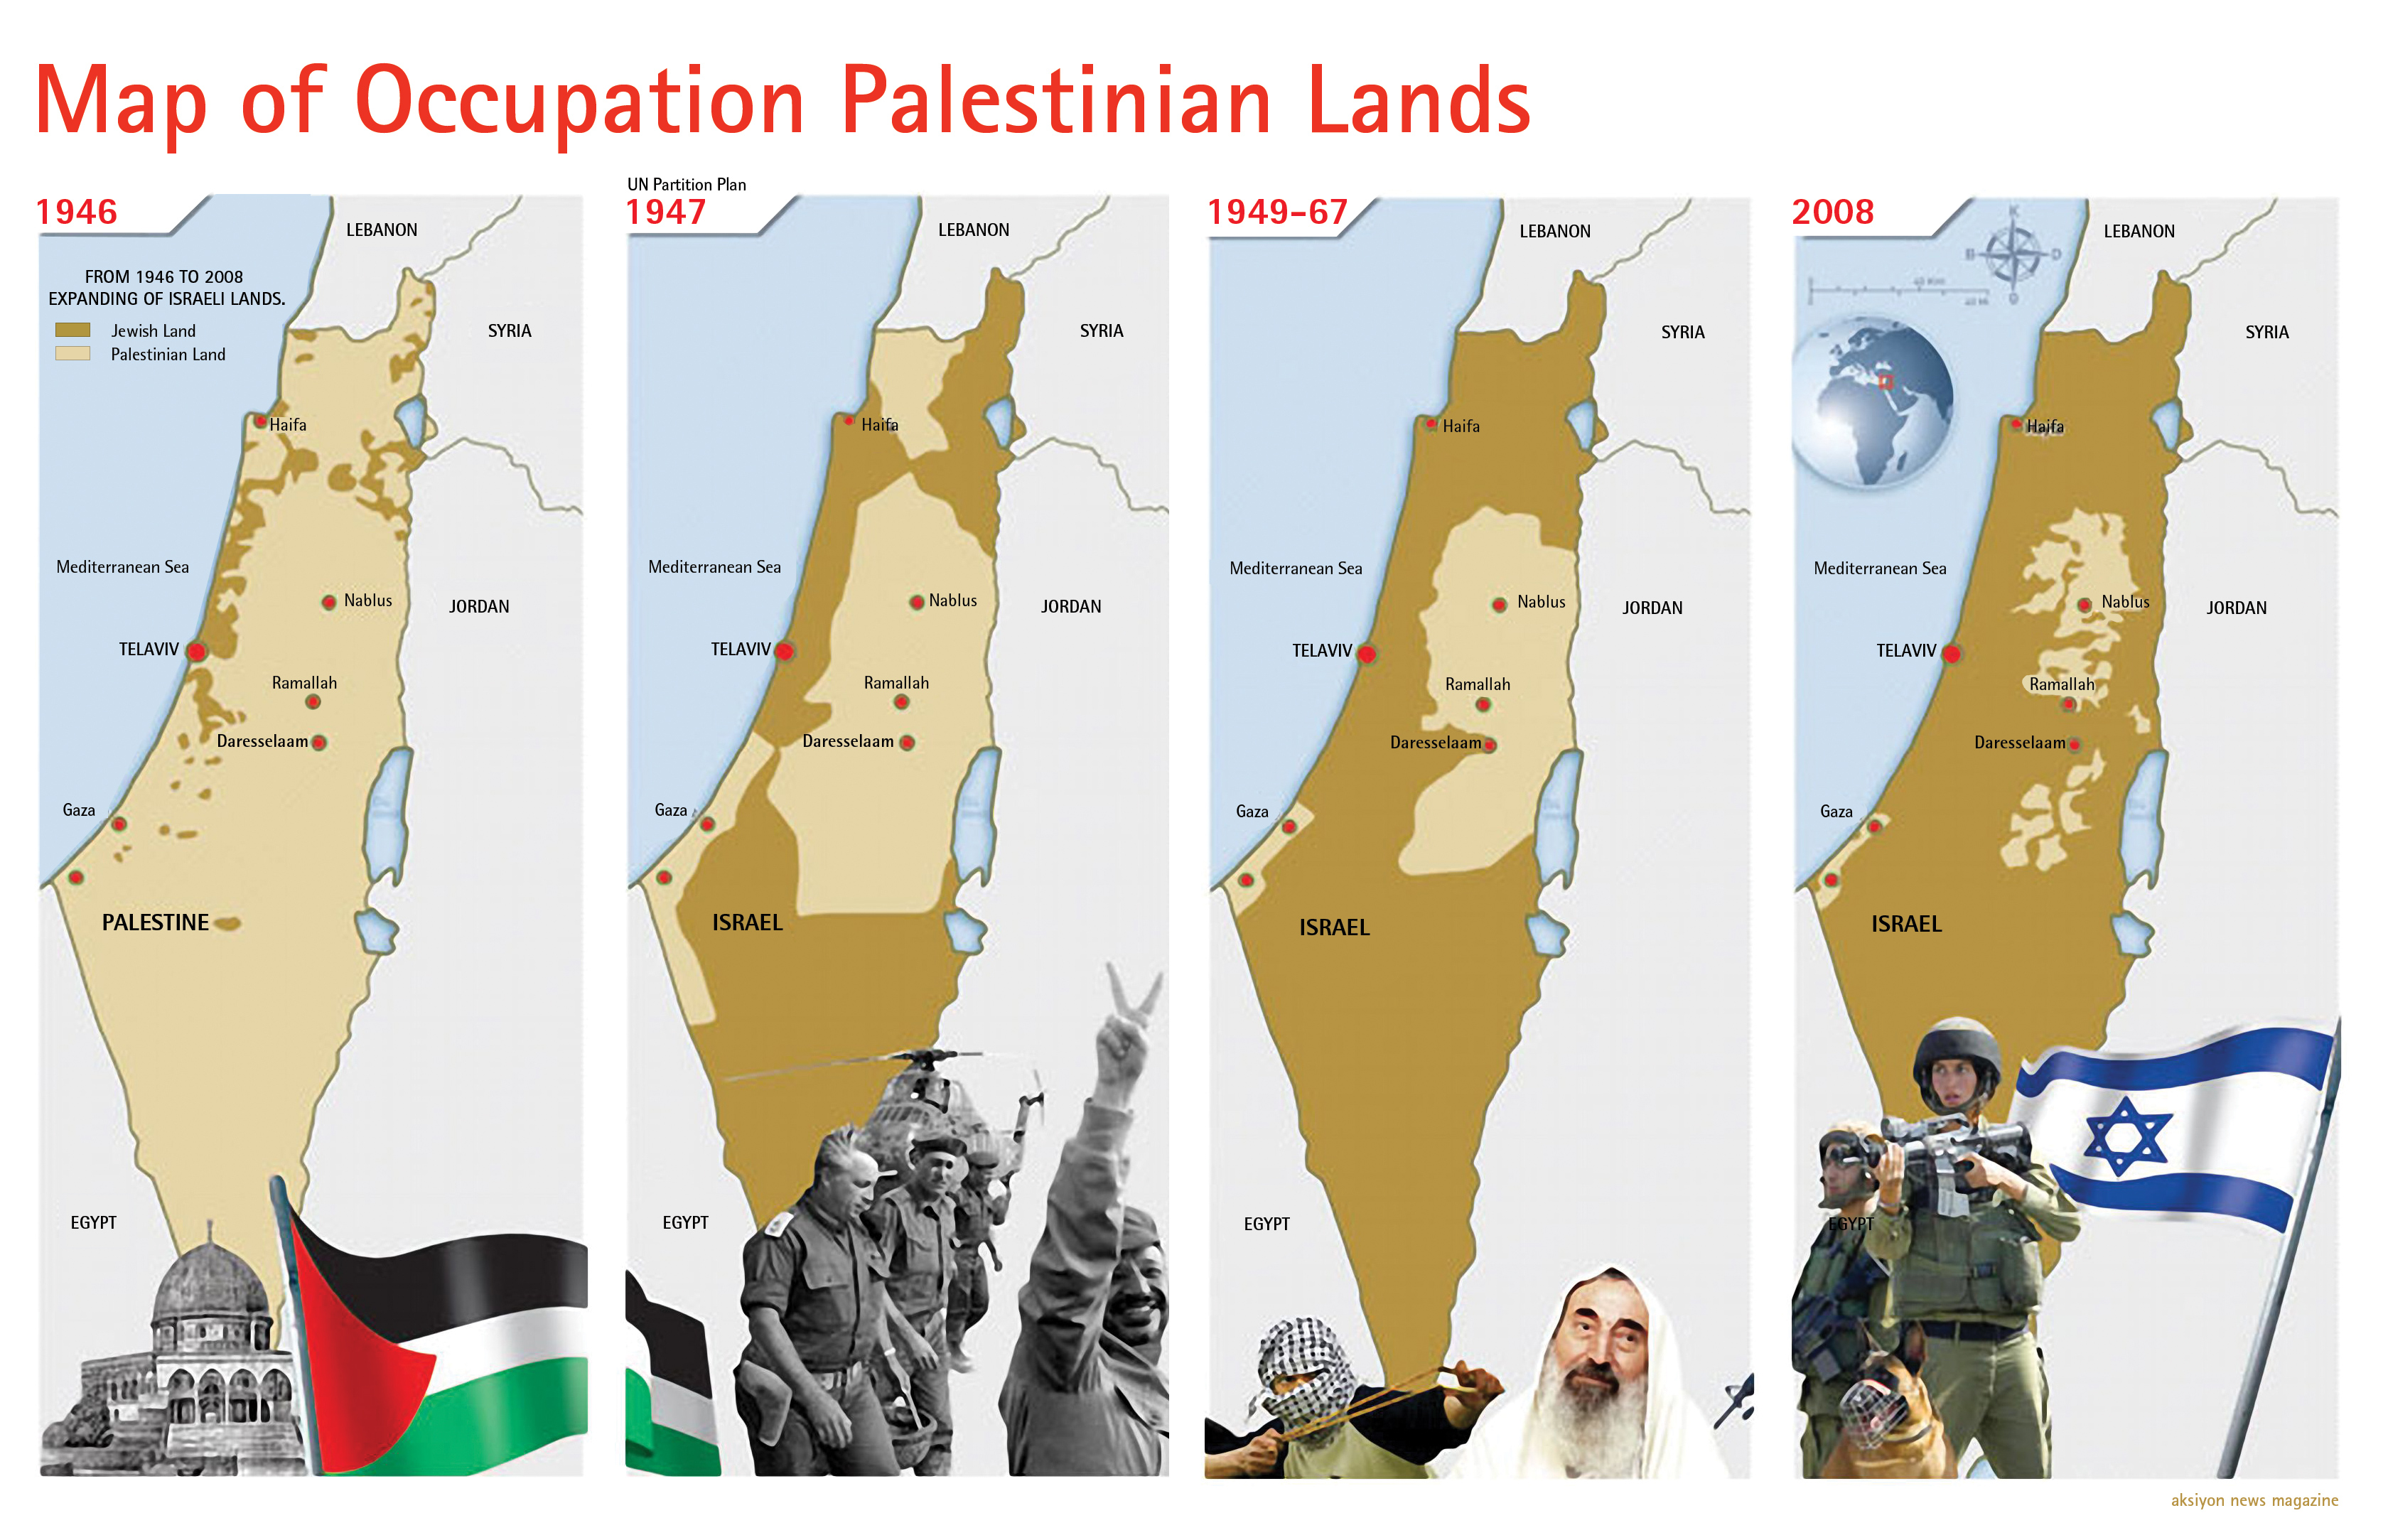 Arab israeli conflict research paper topics